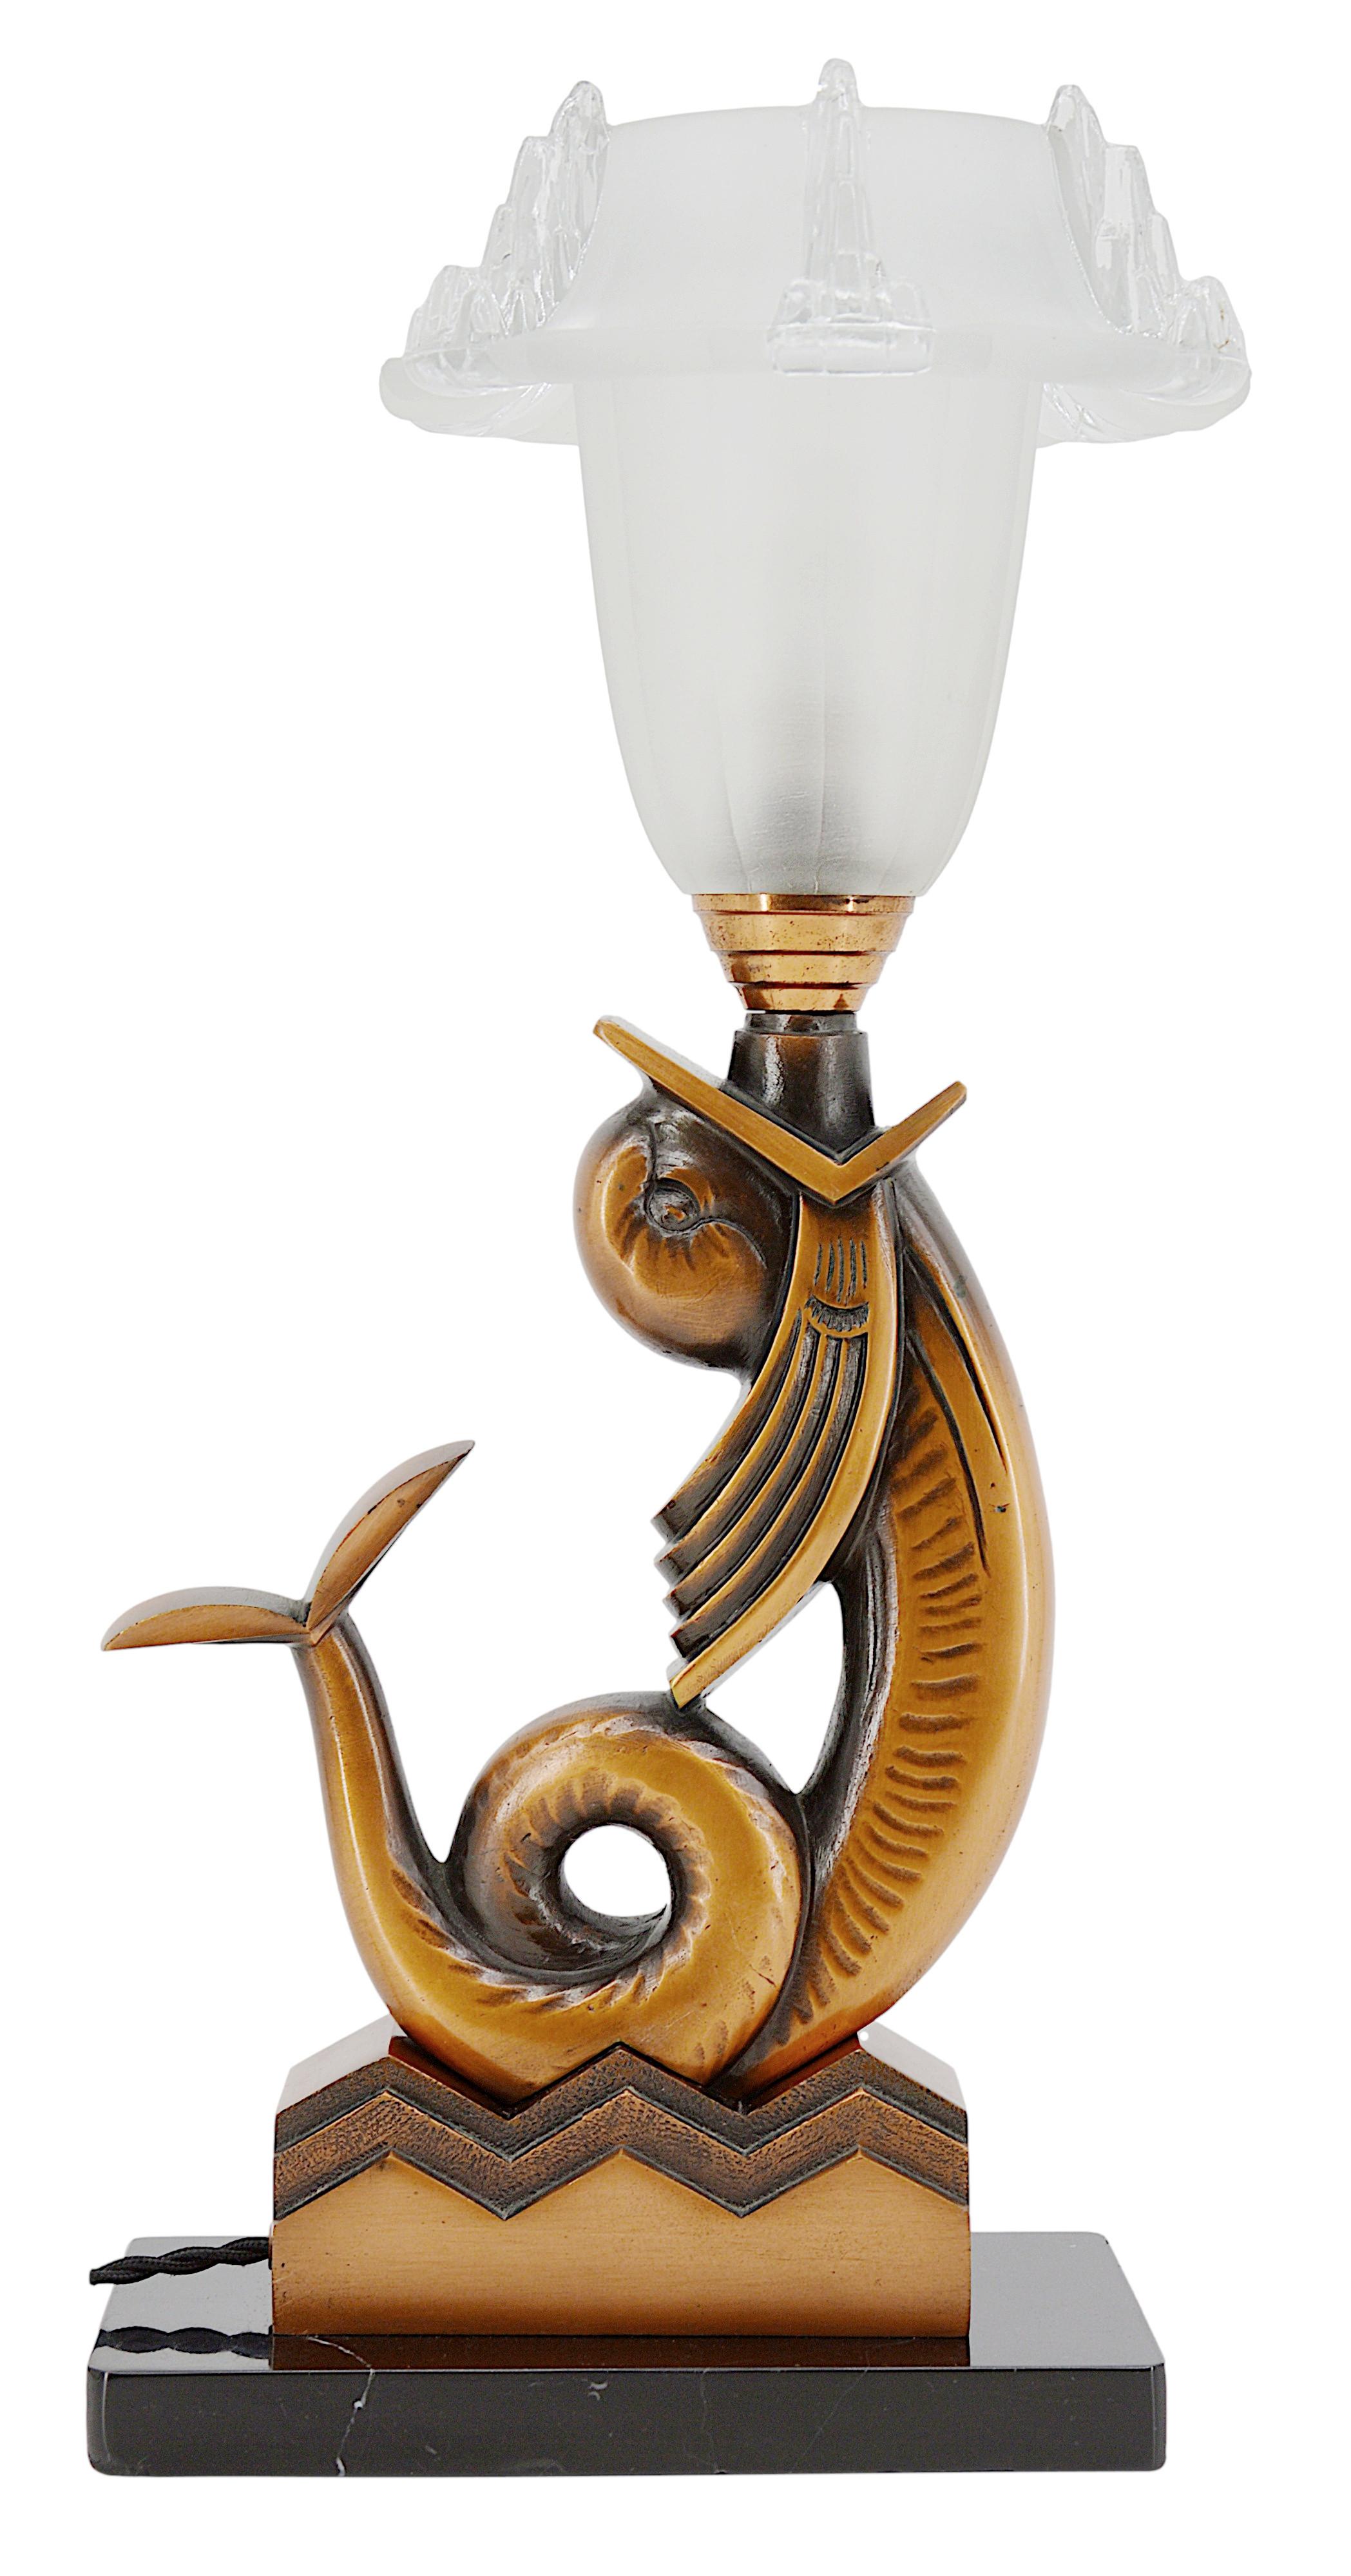 Lampe de table Art déco, France, vers 1930. Spectaculaire poisson stylisé en bronze supportant un abat-jour en verre épais. Abat-jour de Jean Gauthier. Base en marbre. Hauteur : 44,3 cm, largeur : 22 cm, profondeur : 18 cm. Quelques piqûres sur la